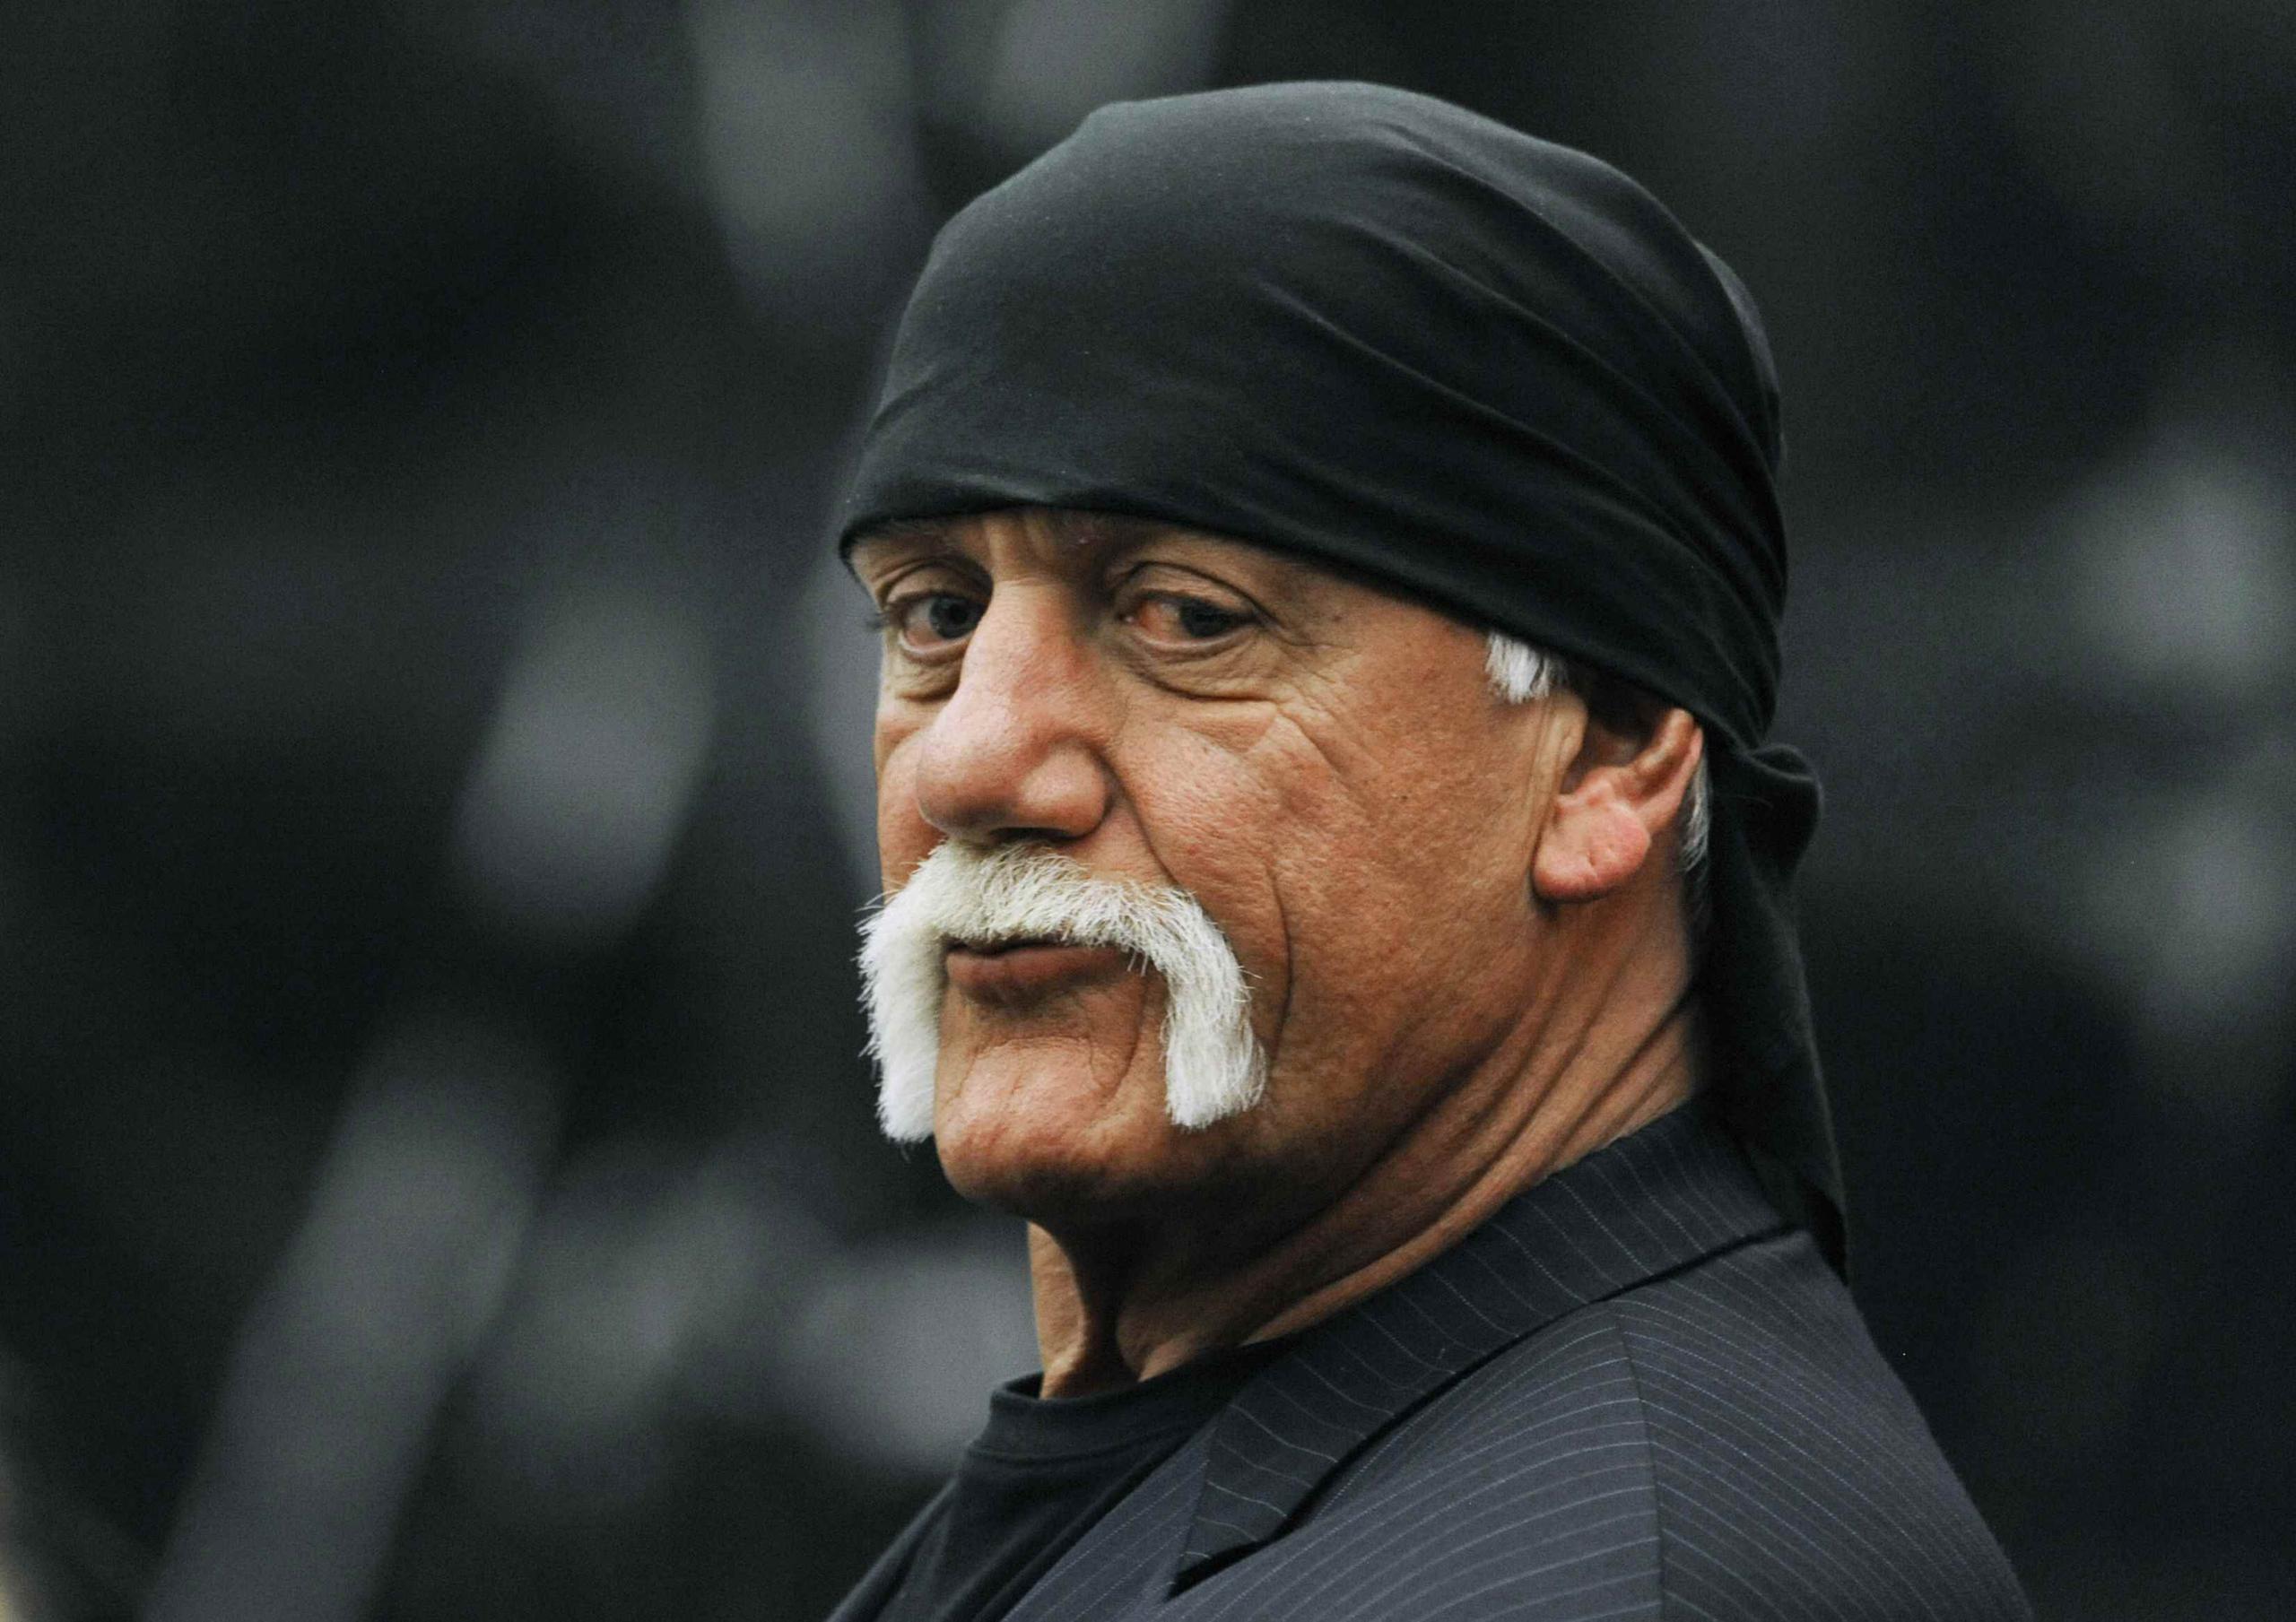 La demanda de Hulk Hogan contra Gawker Media del 2012 obligó a la empresa a declararse en bancarrota. (AP / Steve Nesius)